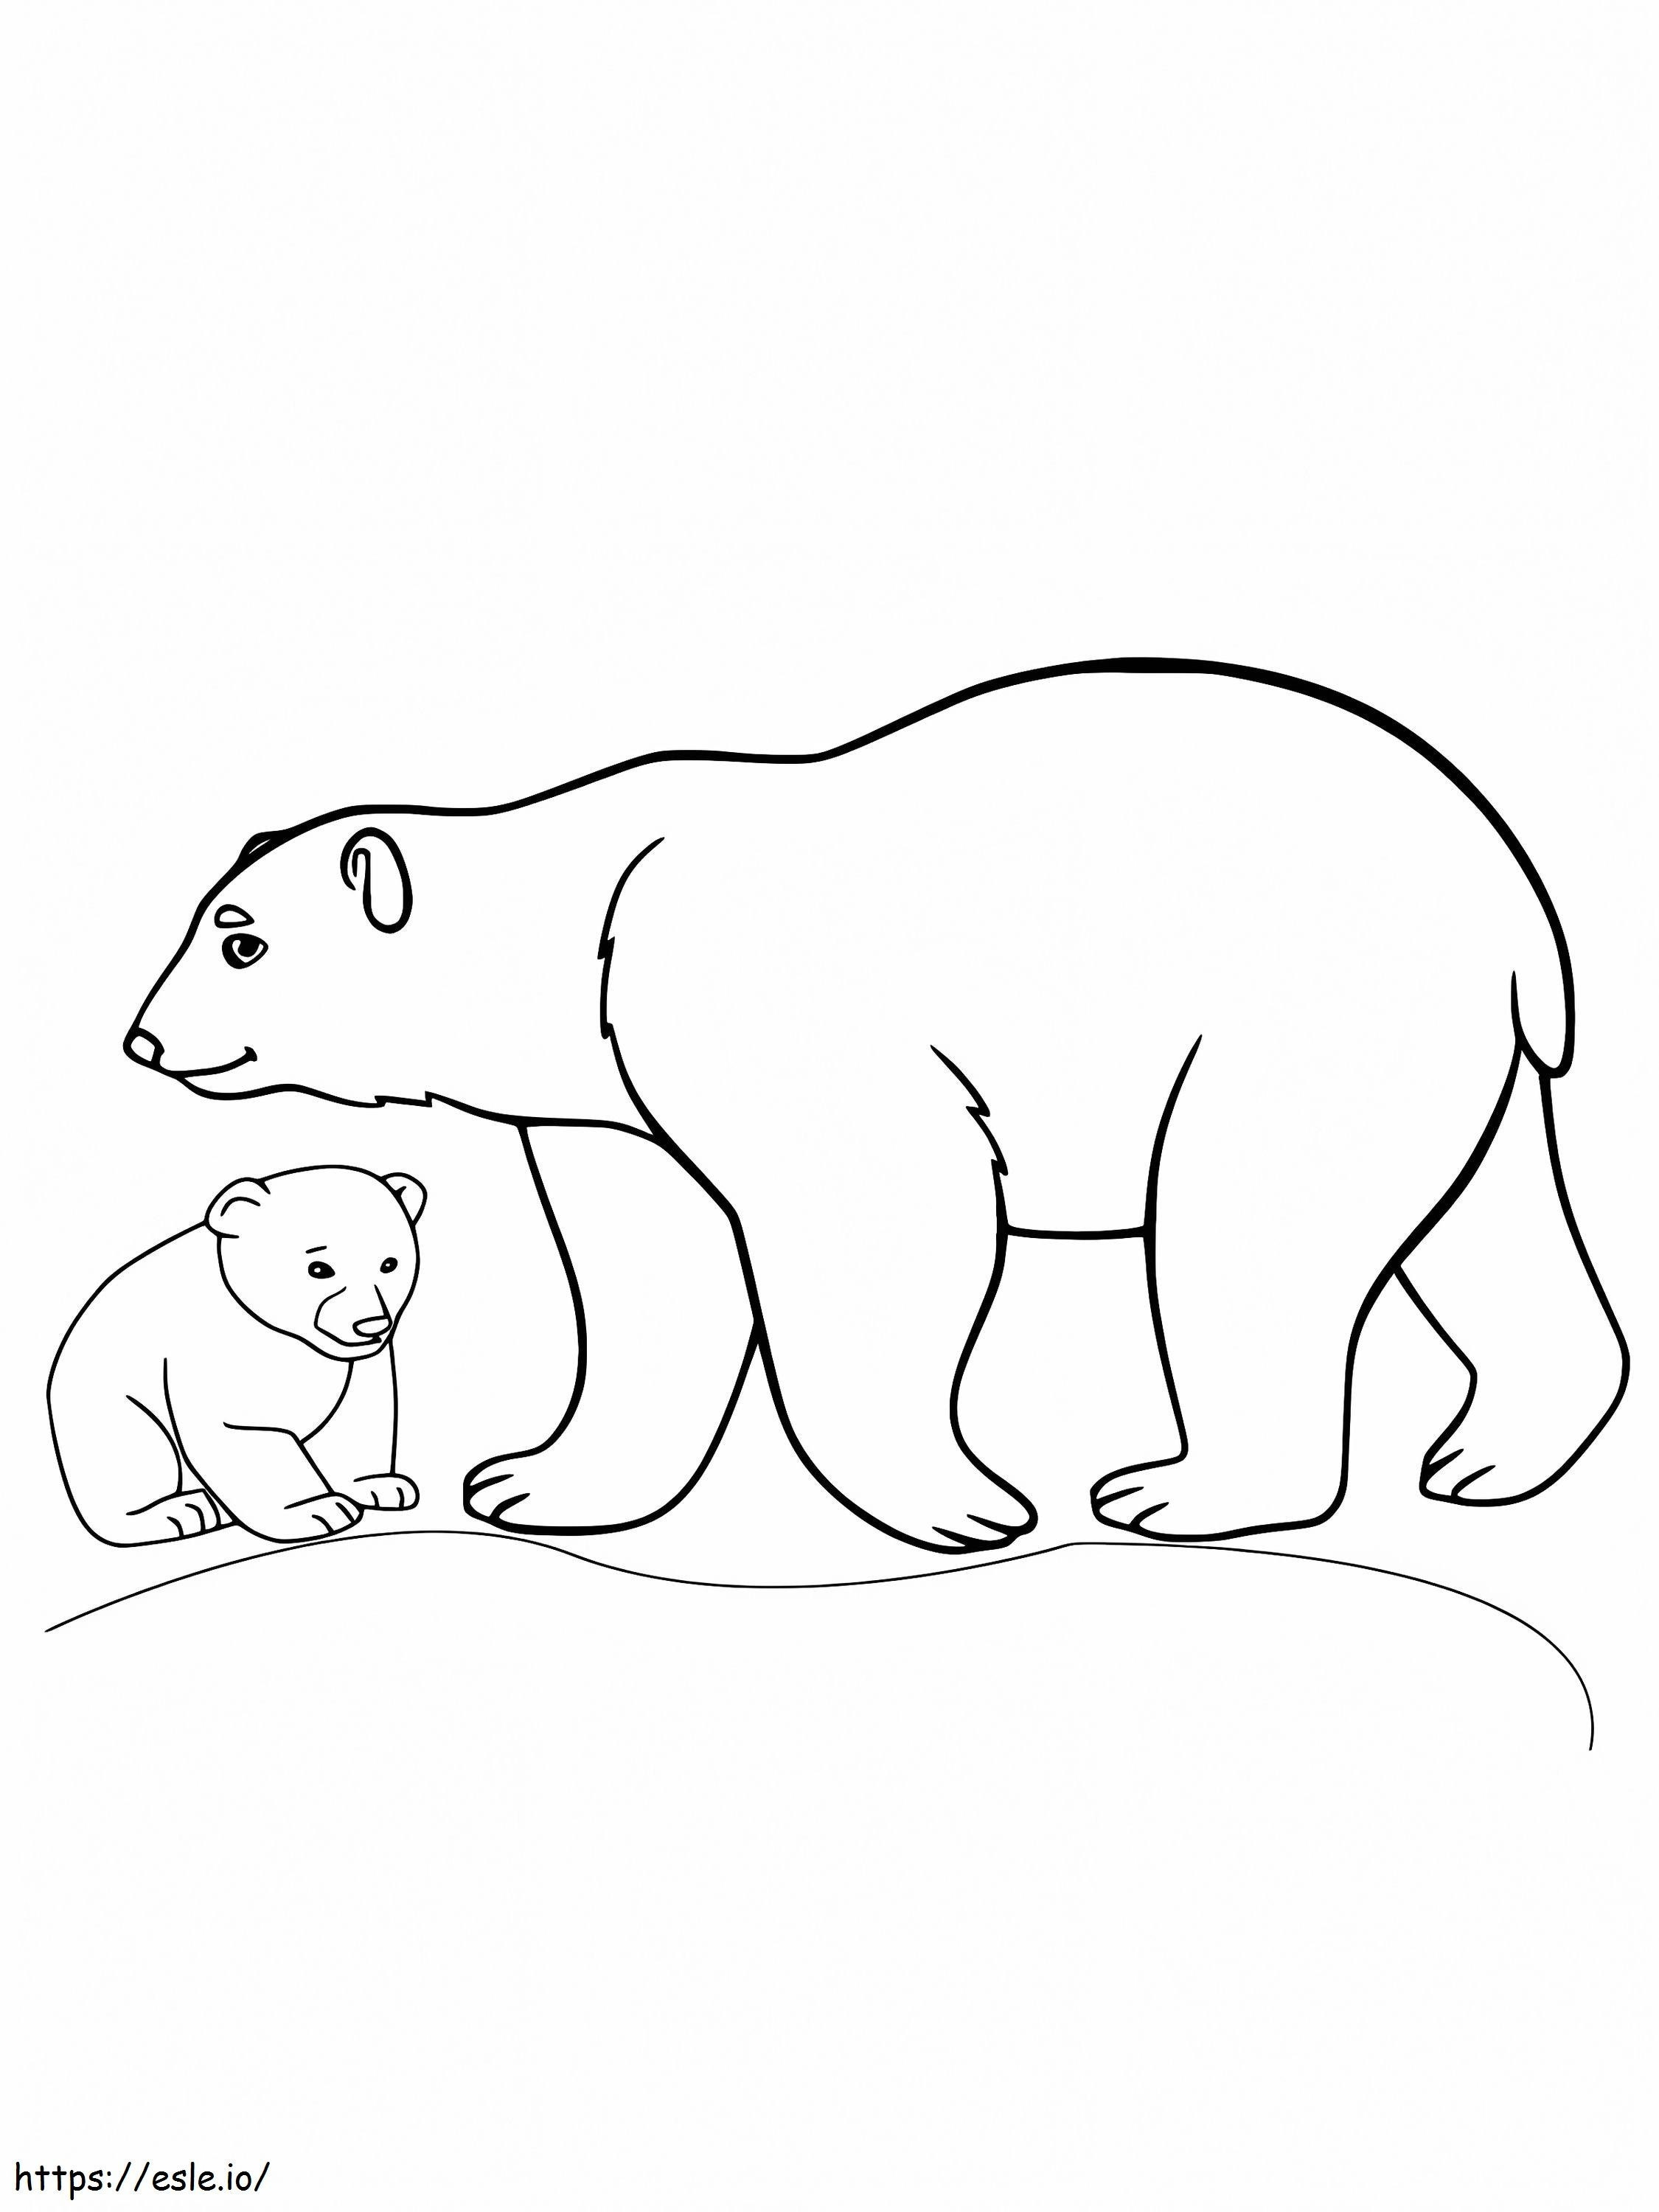 Urso e filhote de animais árticos para colorir